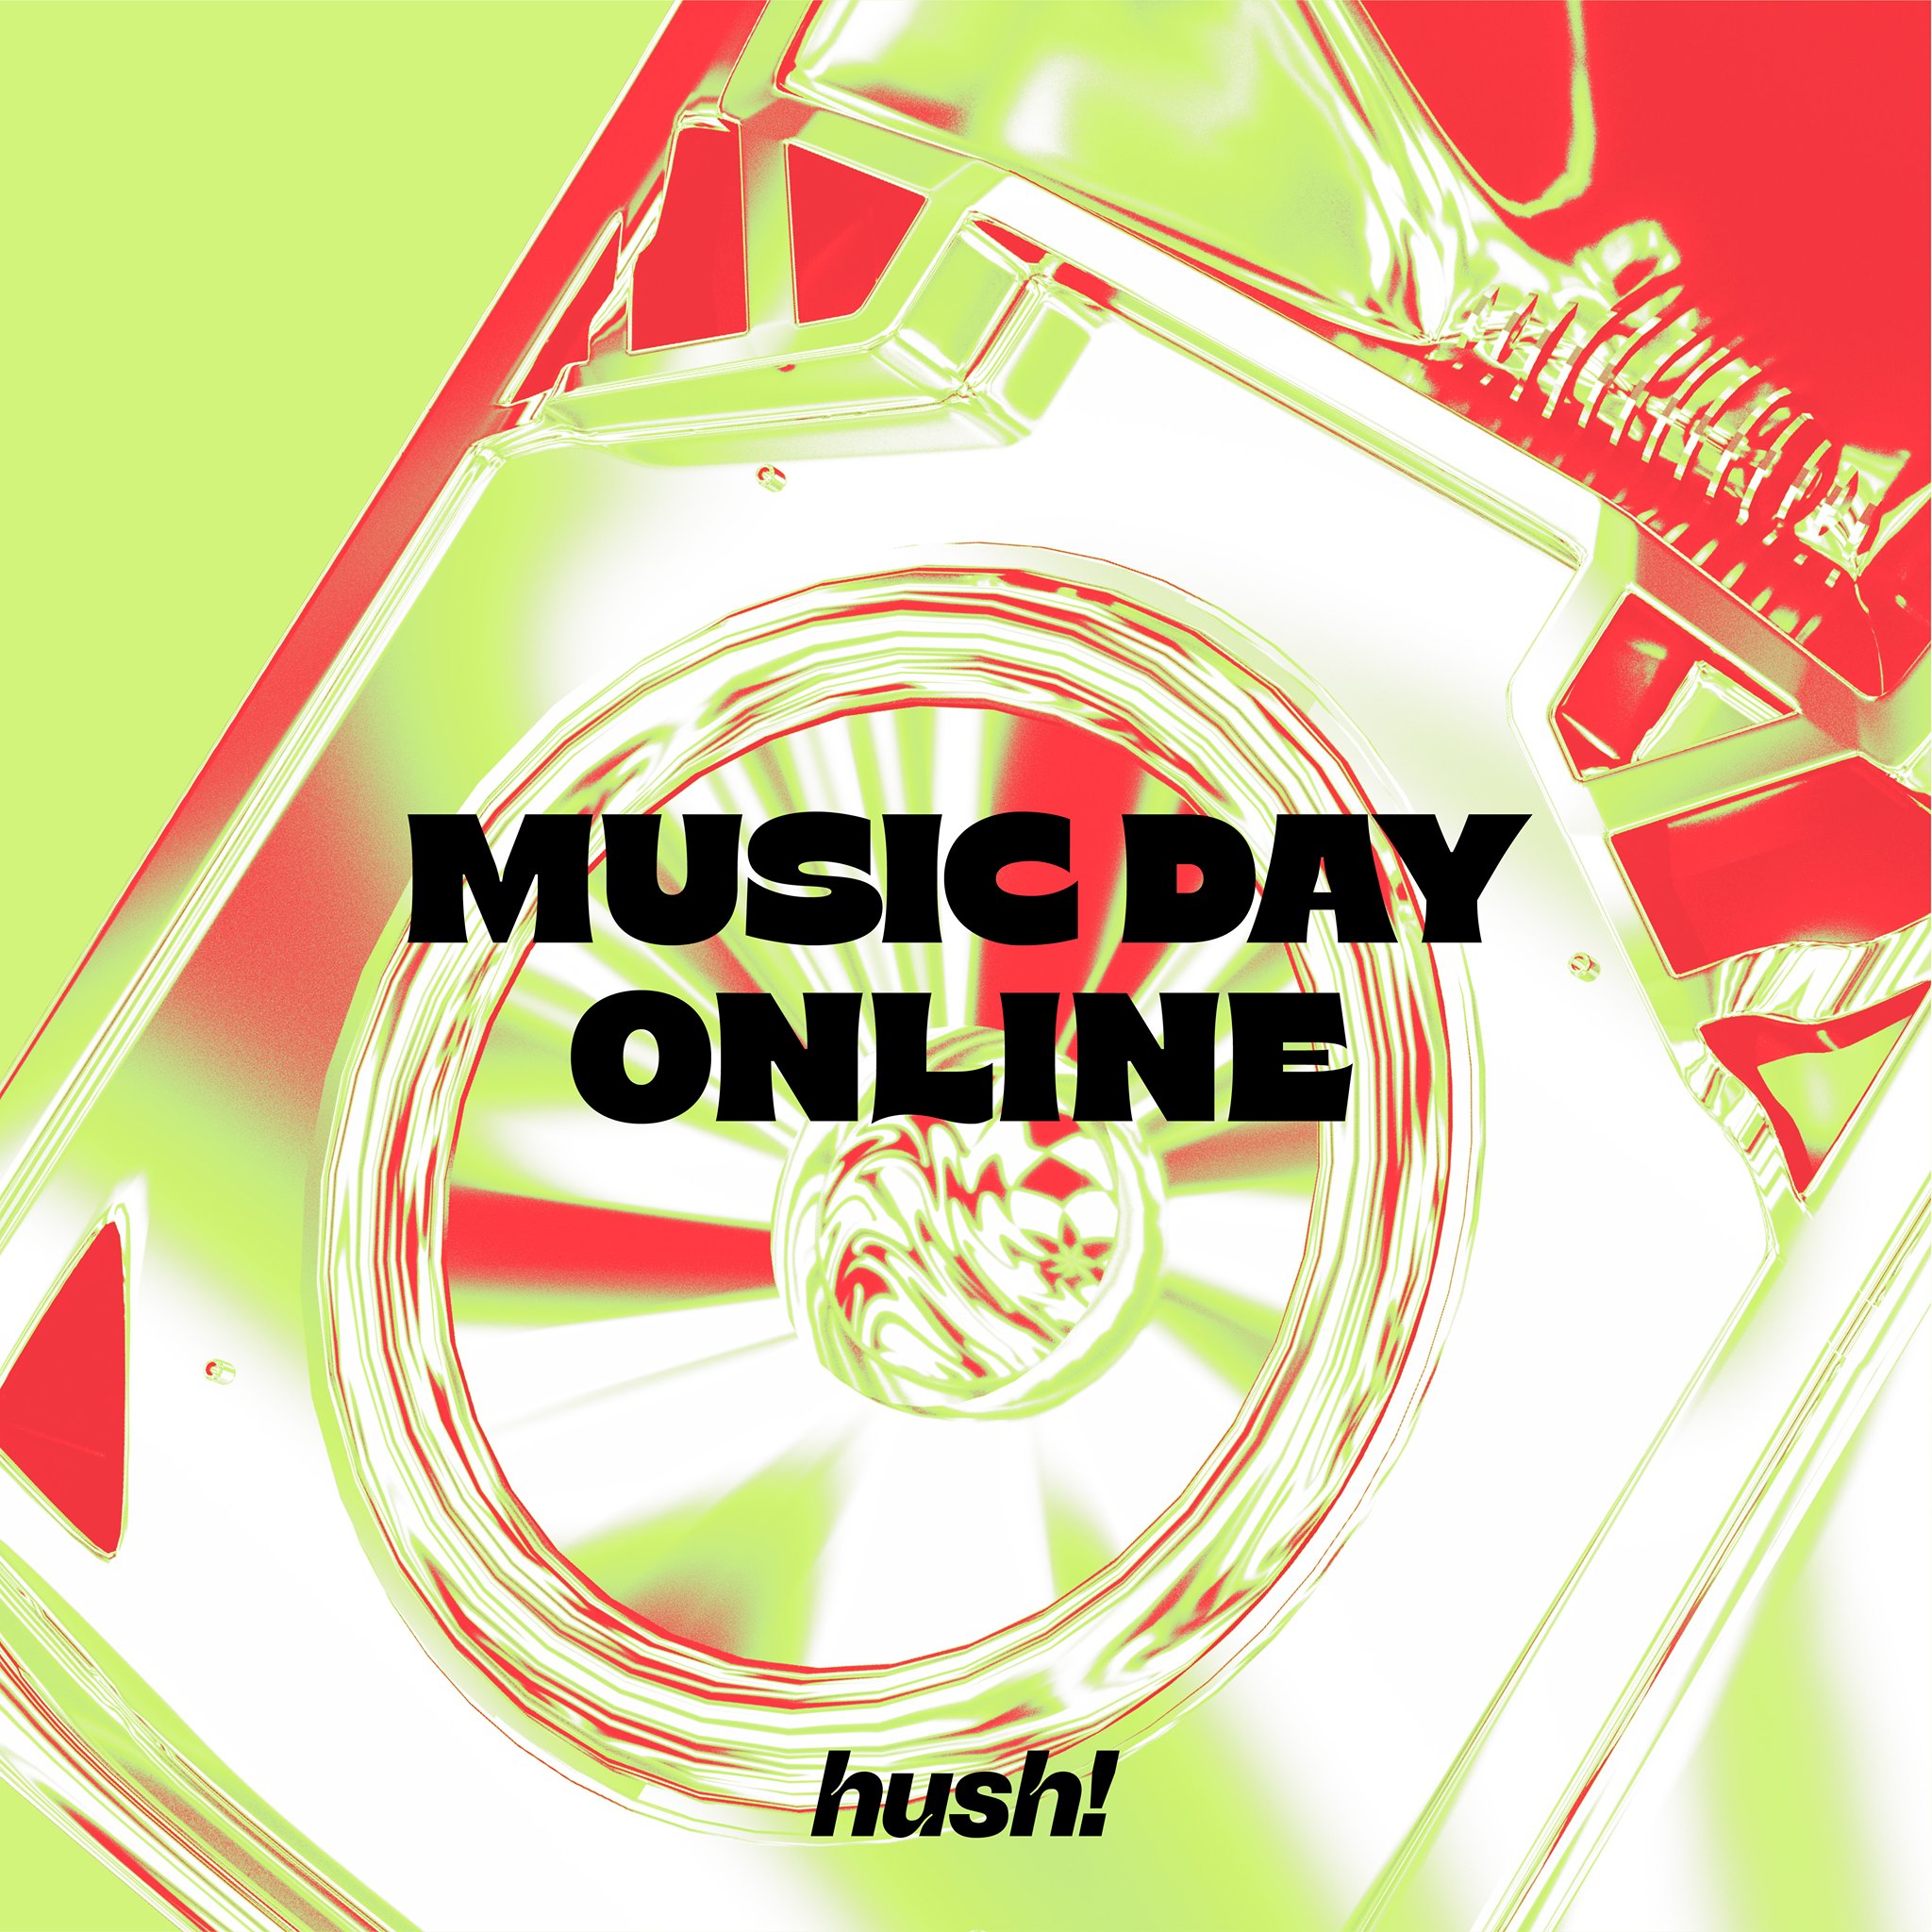 music day online hush festival banner